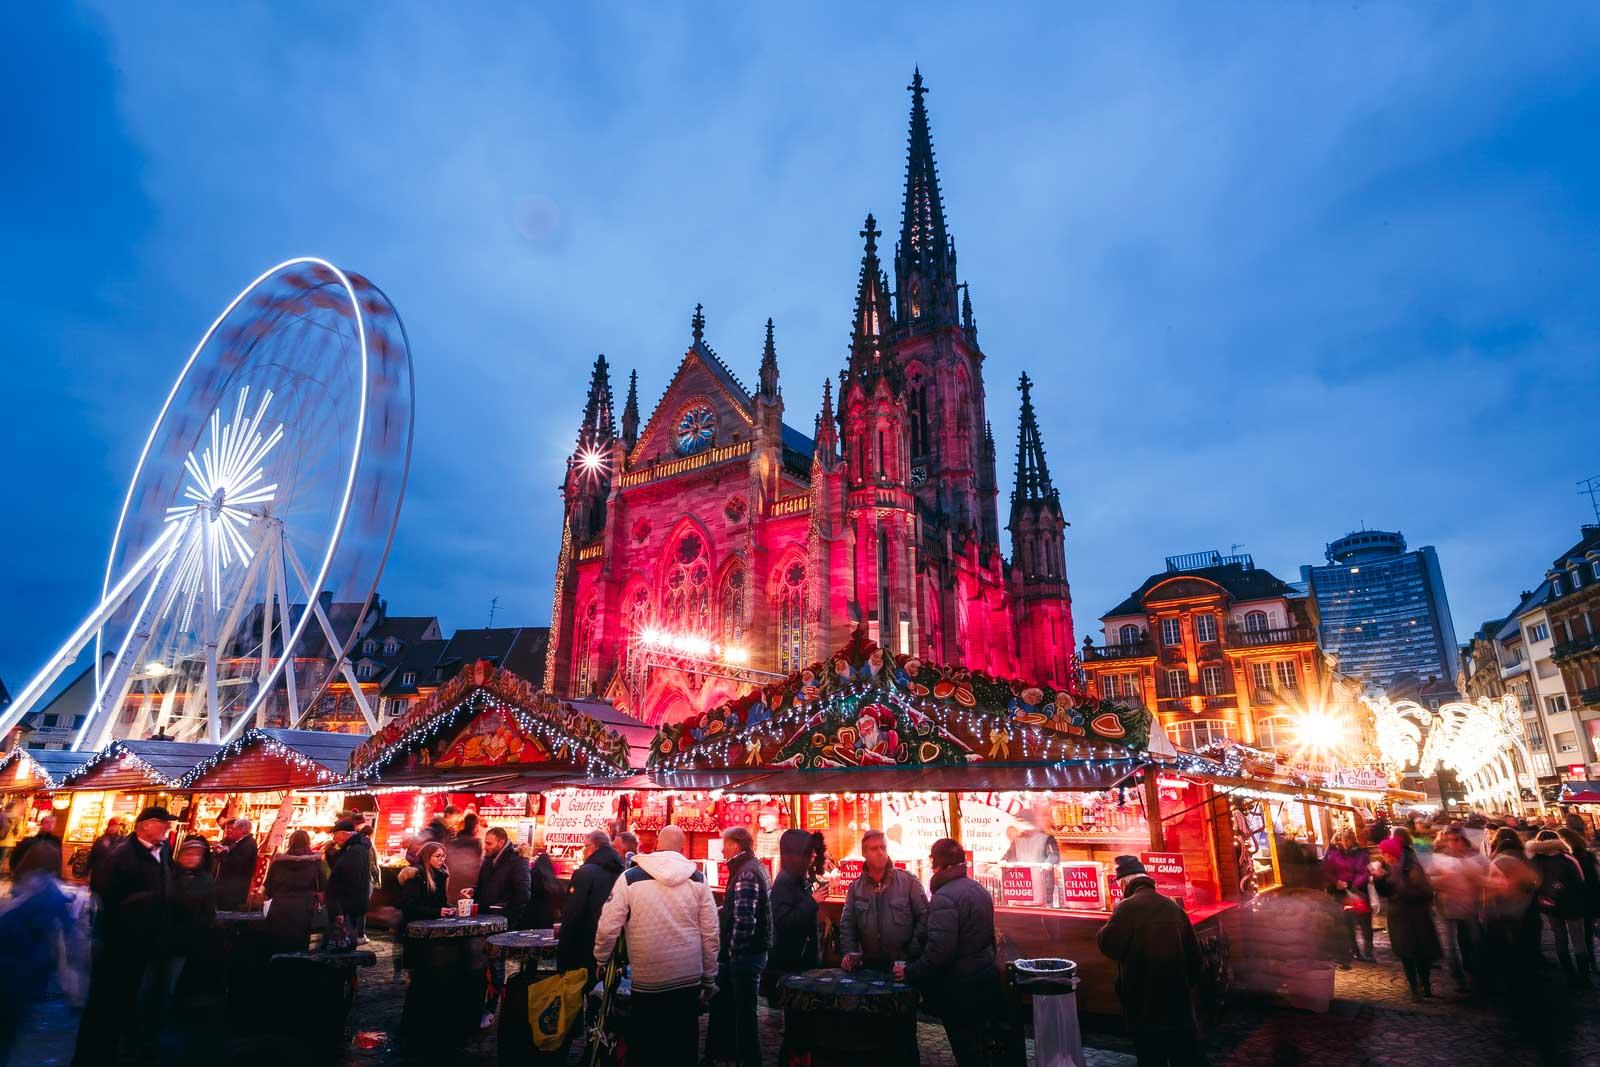 Le marché de Noël de Mulhouse devant la cathédrale © Nis&For